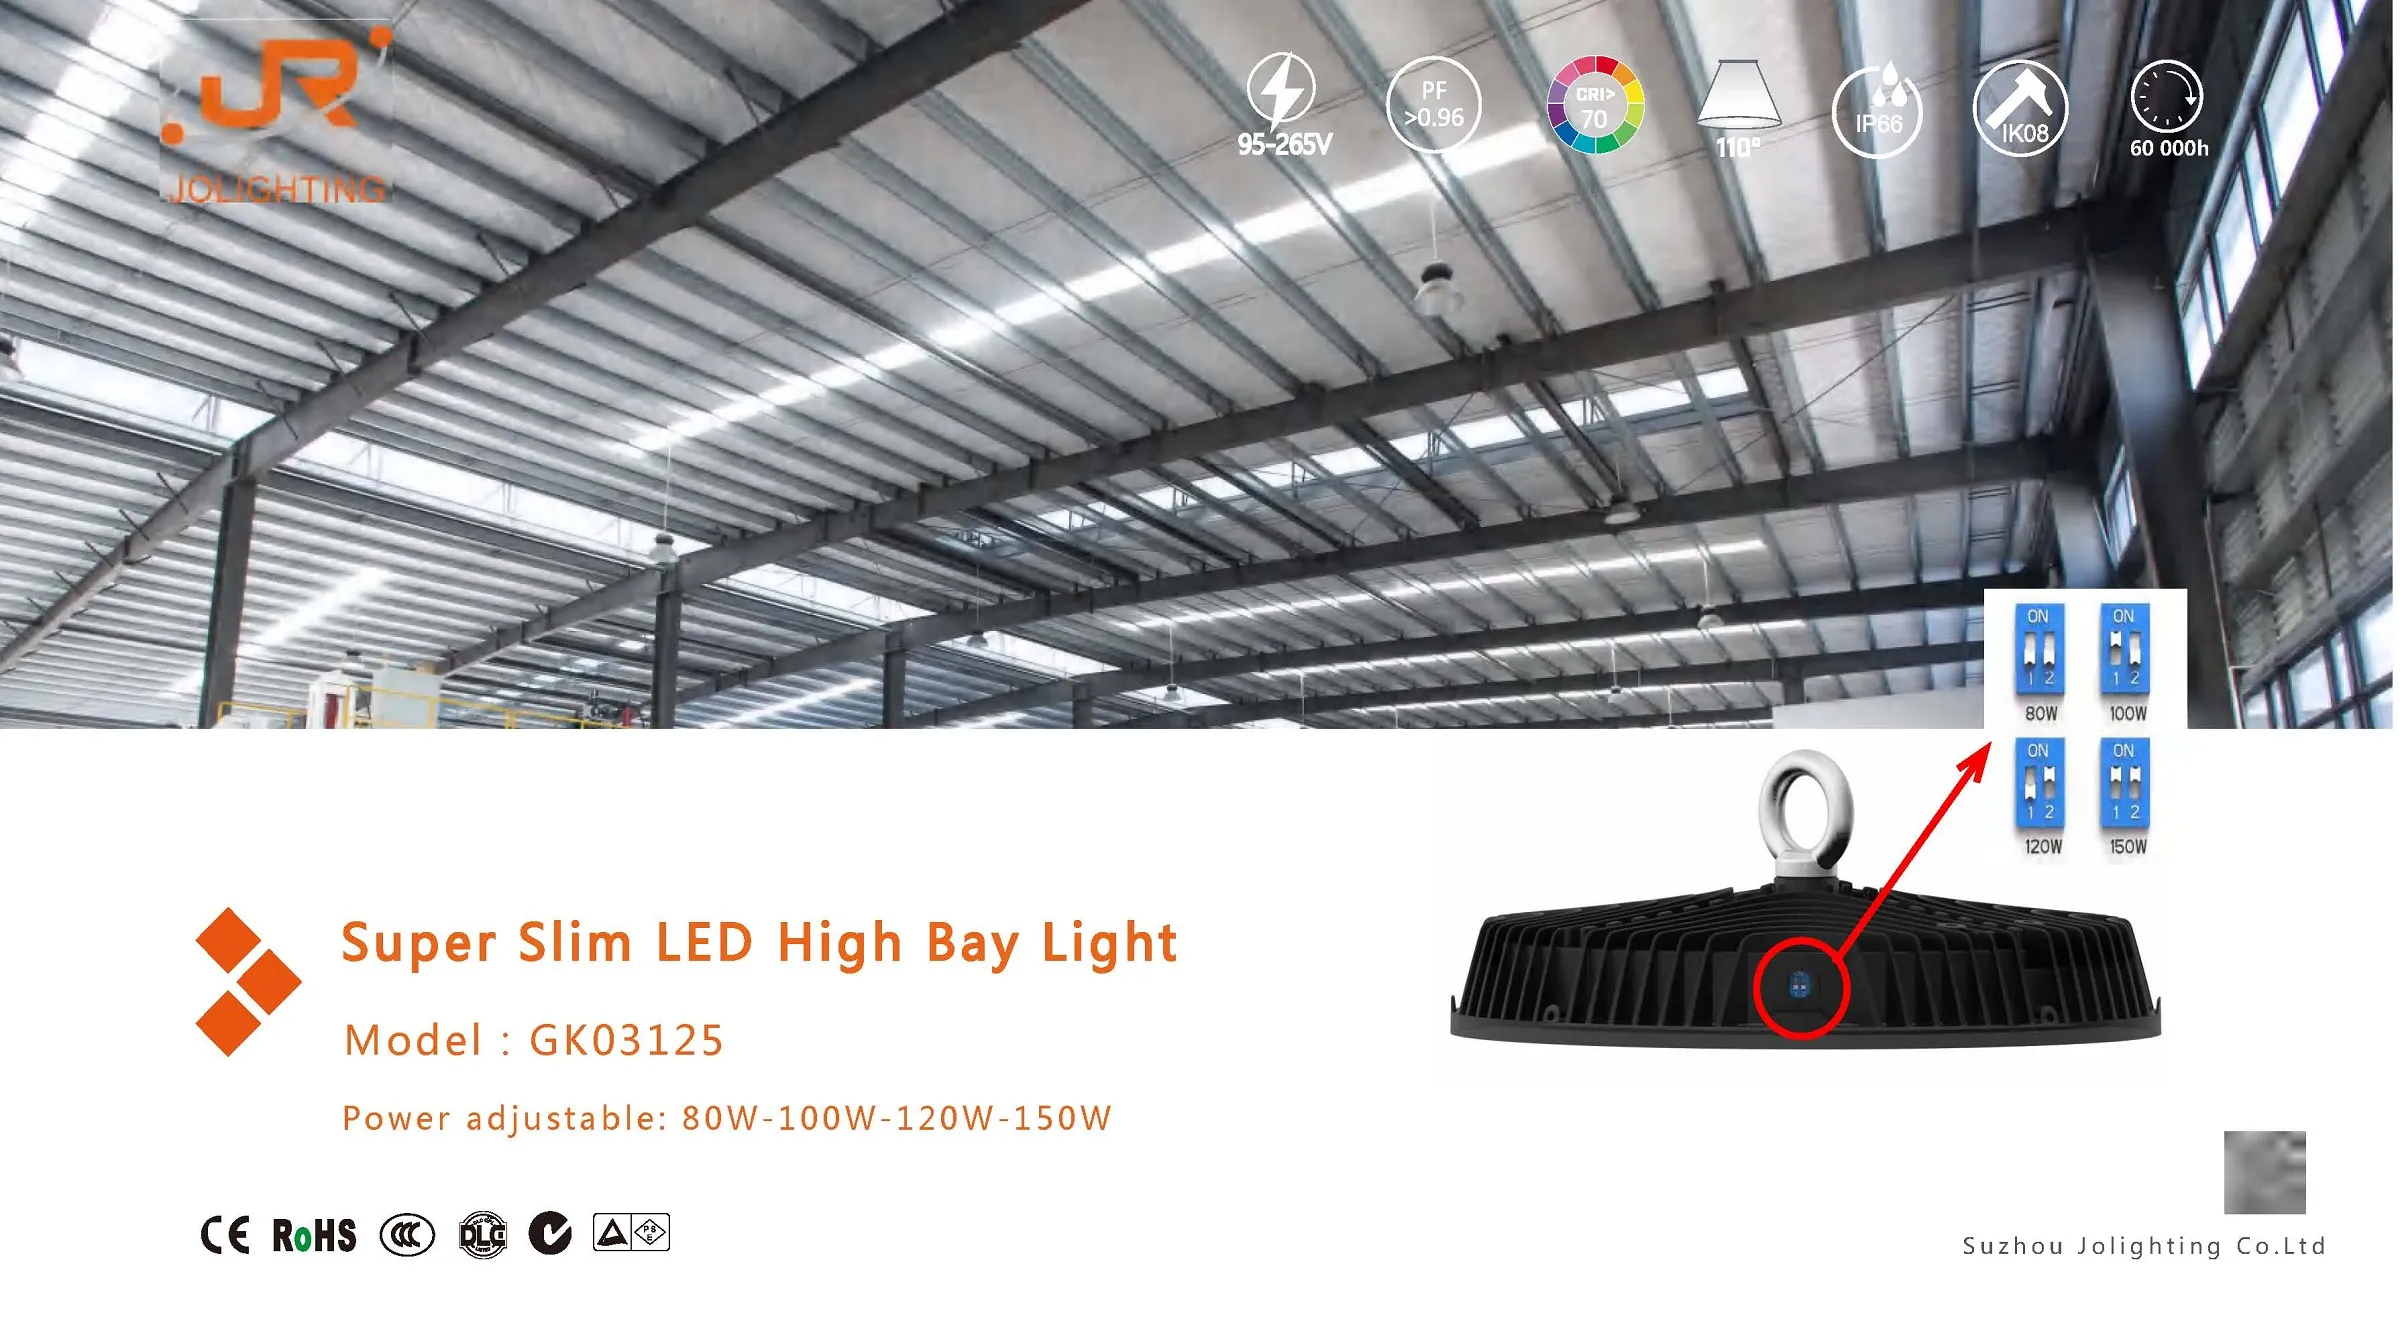 LED High Bay Light  GK03125 Series